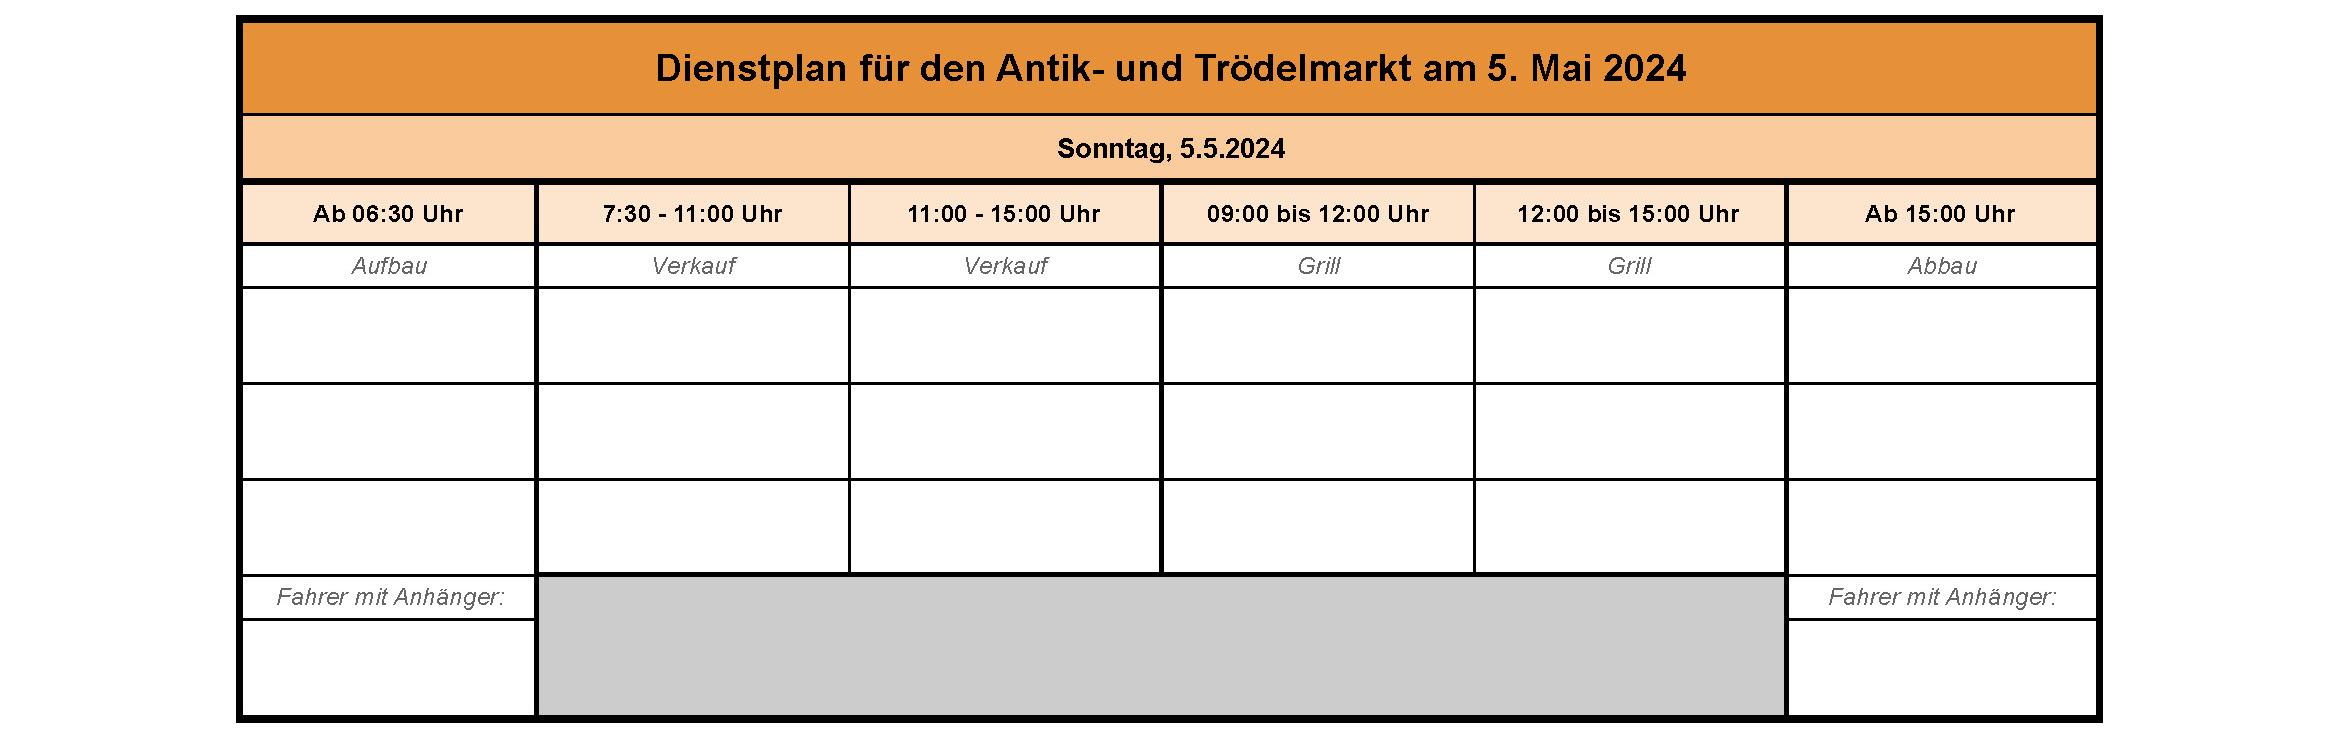 Schichtplan_2024_05_05_Antik_und_Trödelmarkt_Orga_Plaschis_0.02